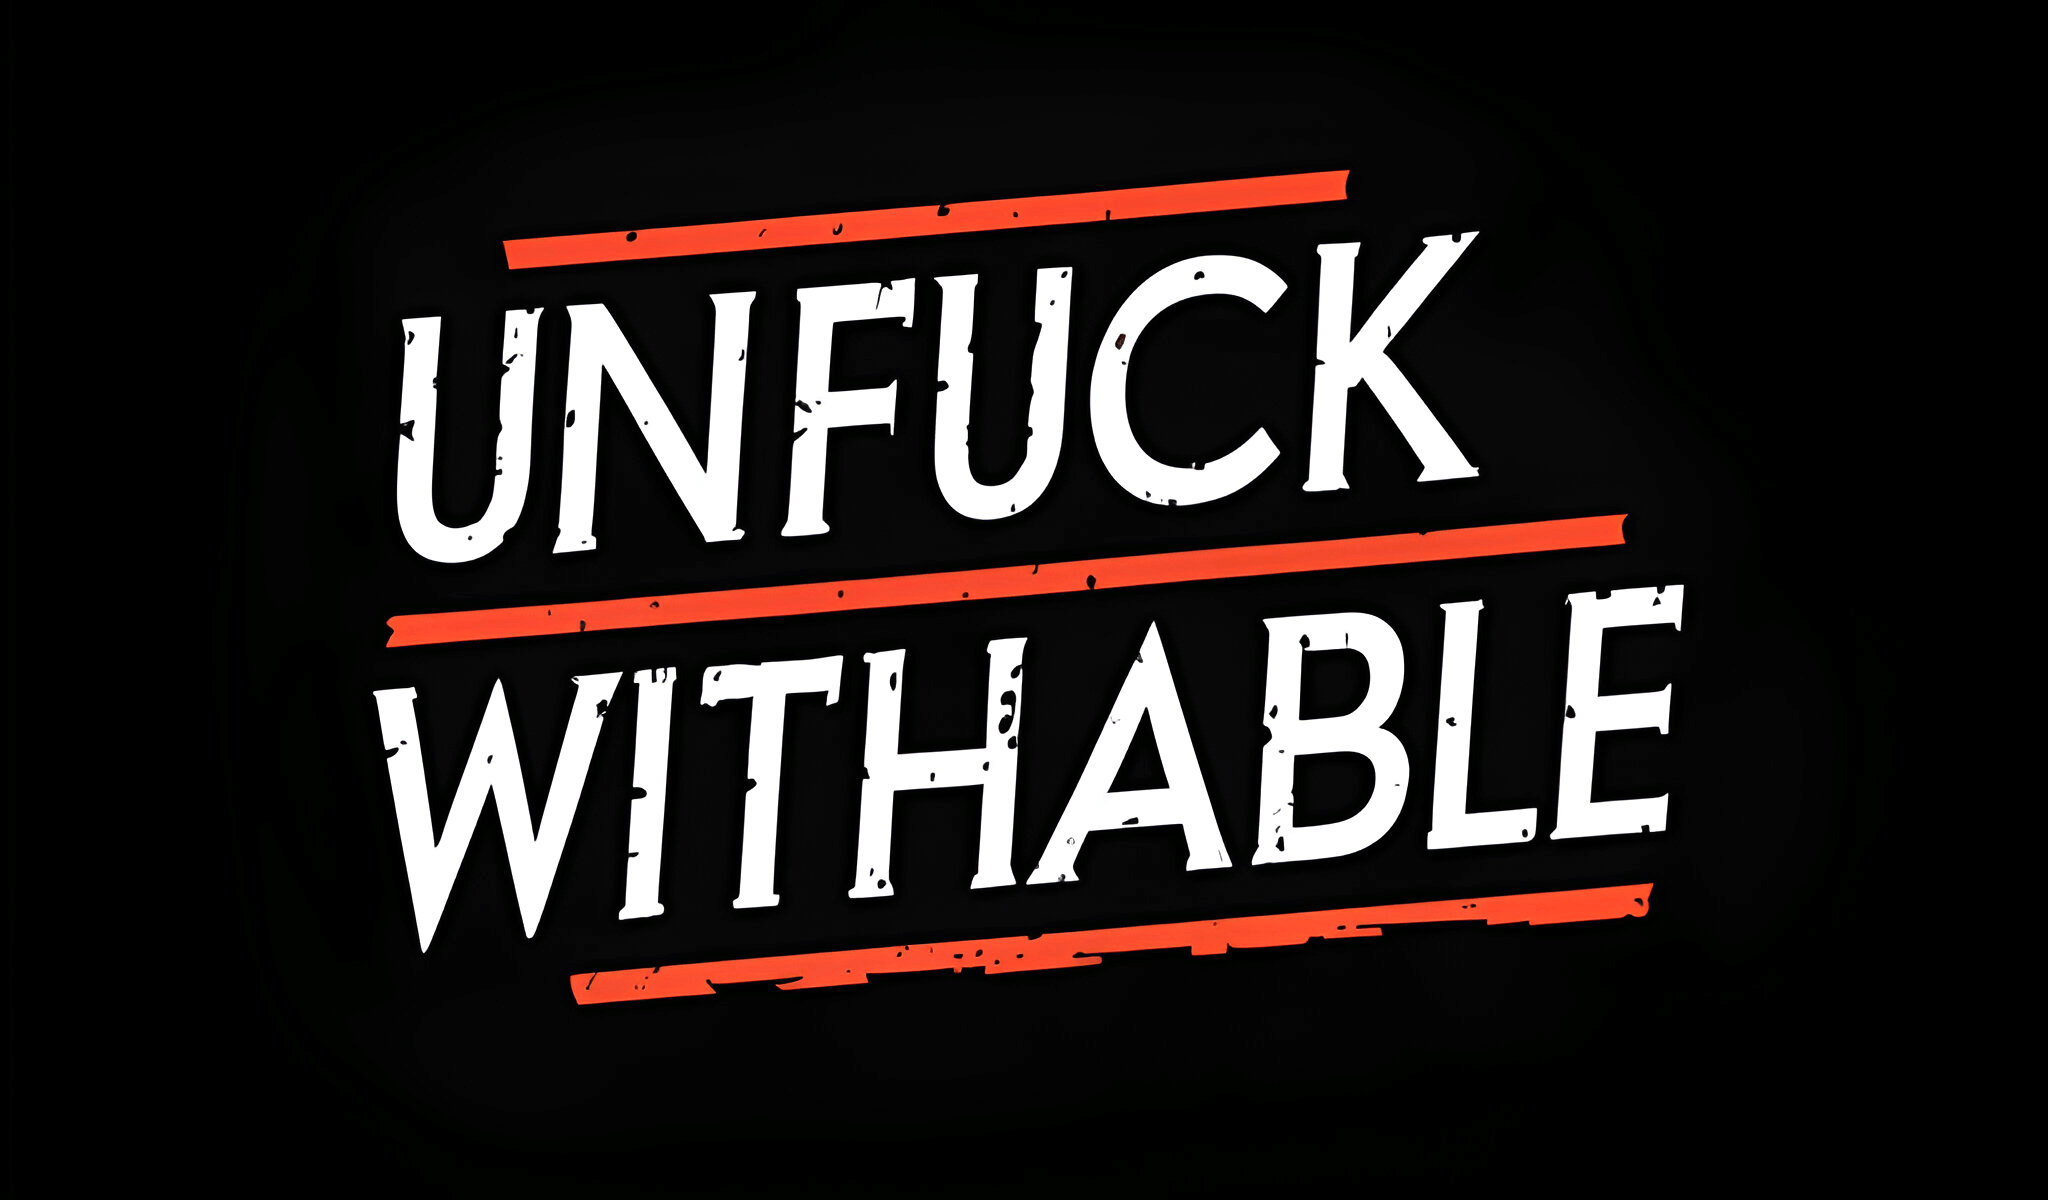 Unfuckwithable logo